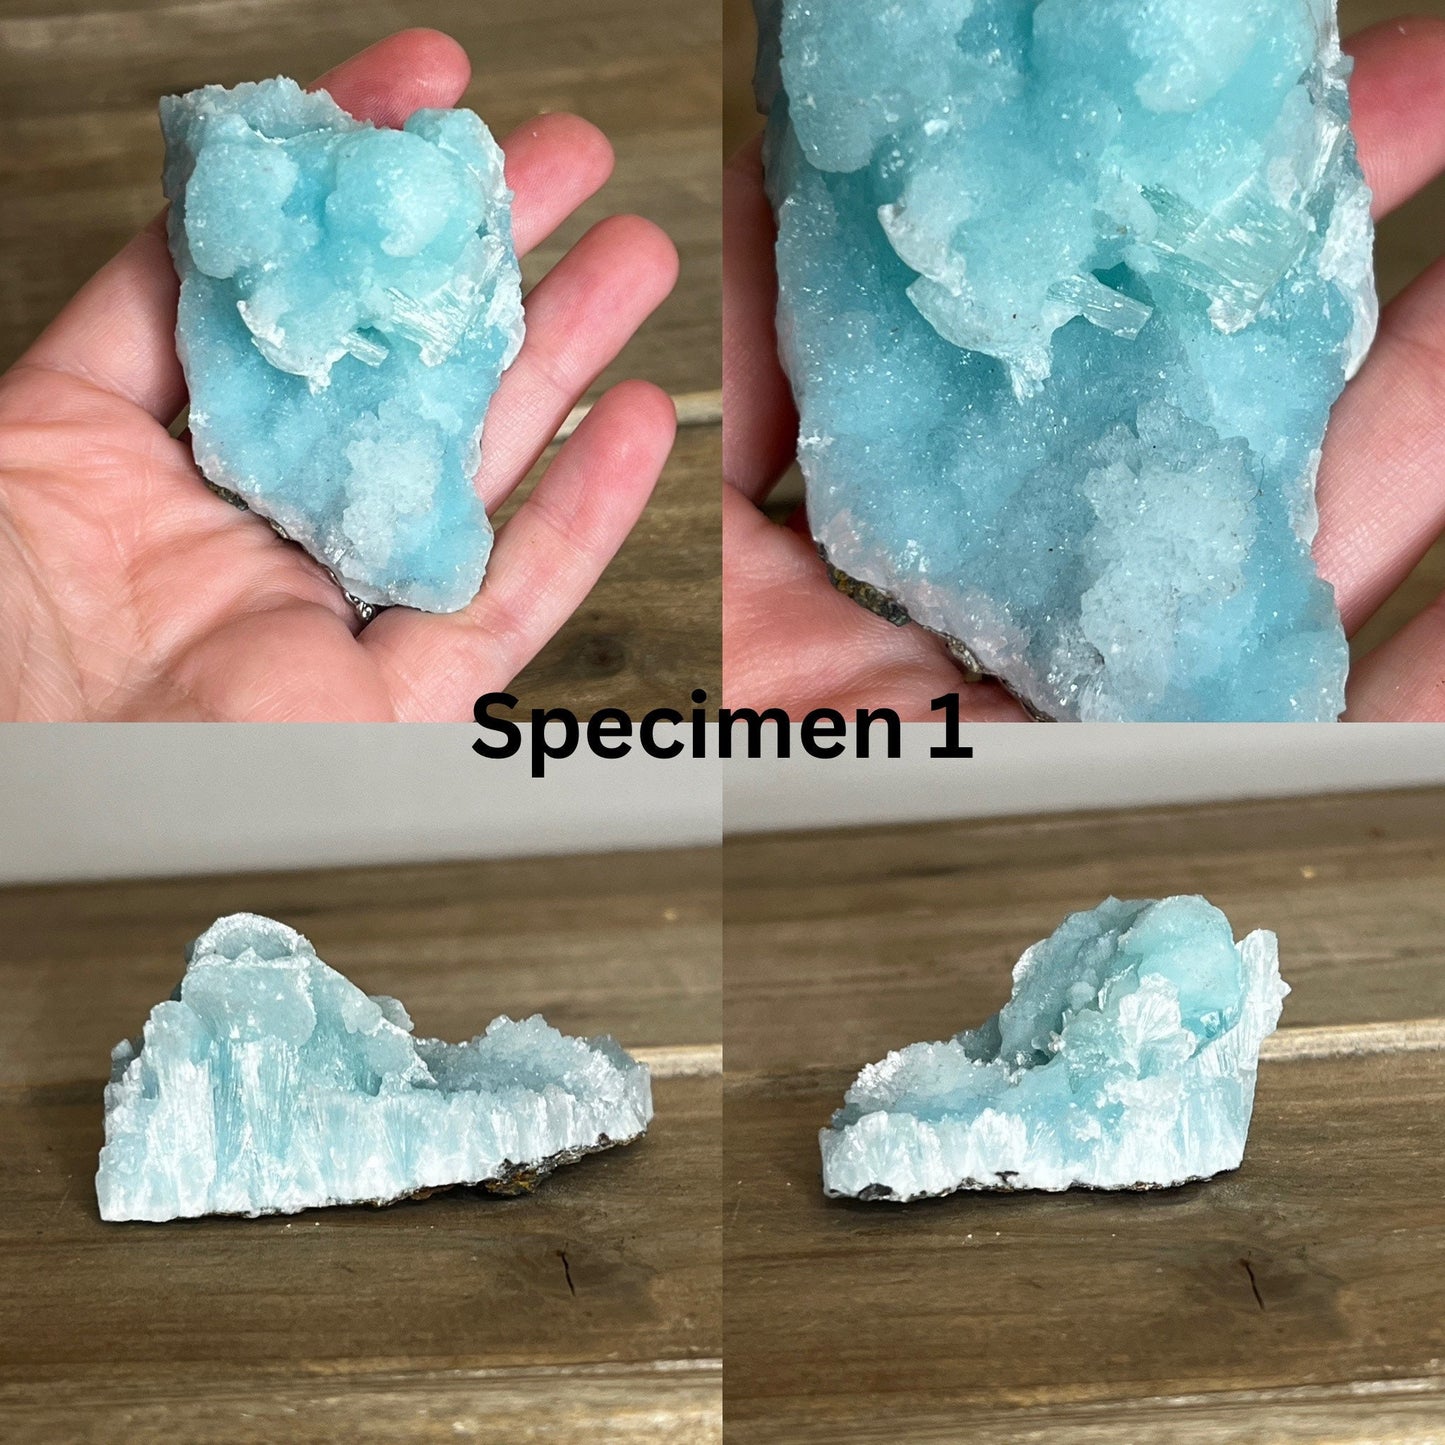 Blue Aragonite Specimen